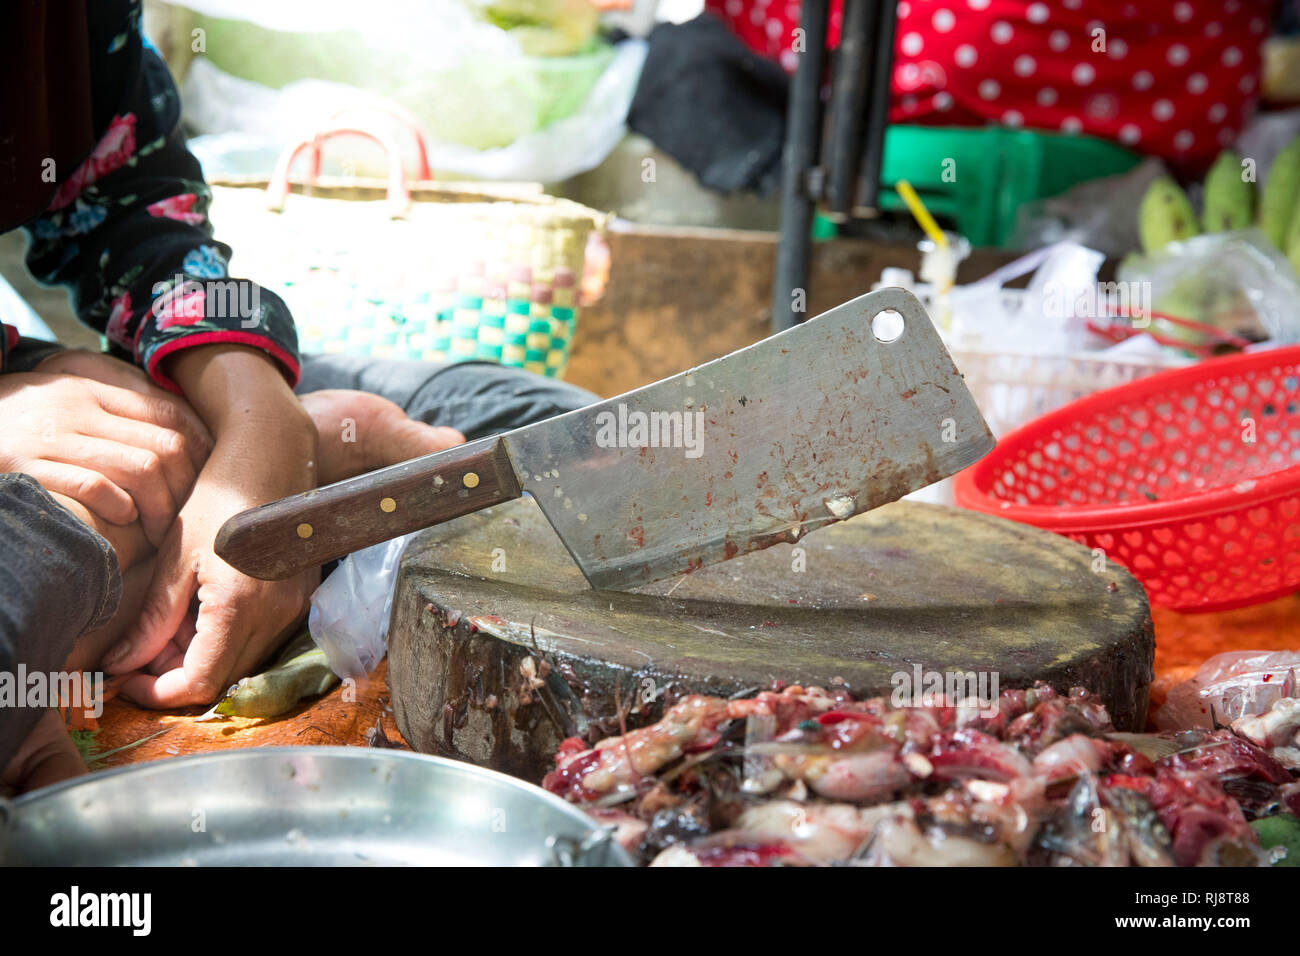 Kambodscha, Phnom Penh, Kandal Market, Schneidetisch eine Fischhändlers, Markt der Armen, hier gibt es alles, Lebensmittel, Werkzeug und Ersatzteile s Stock Photo